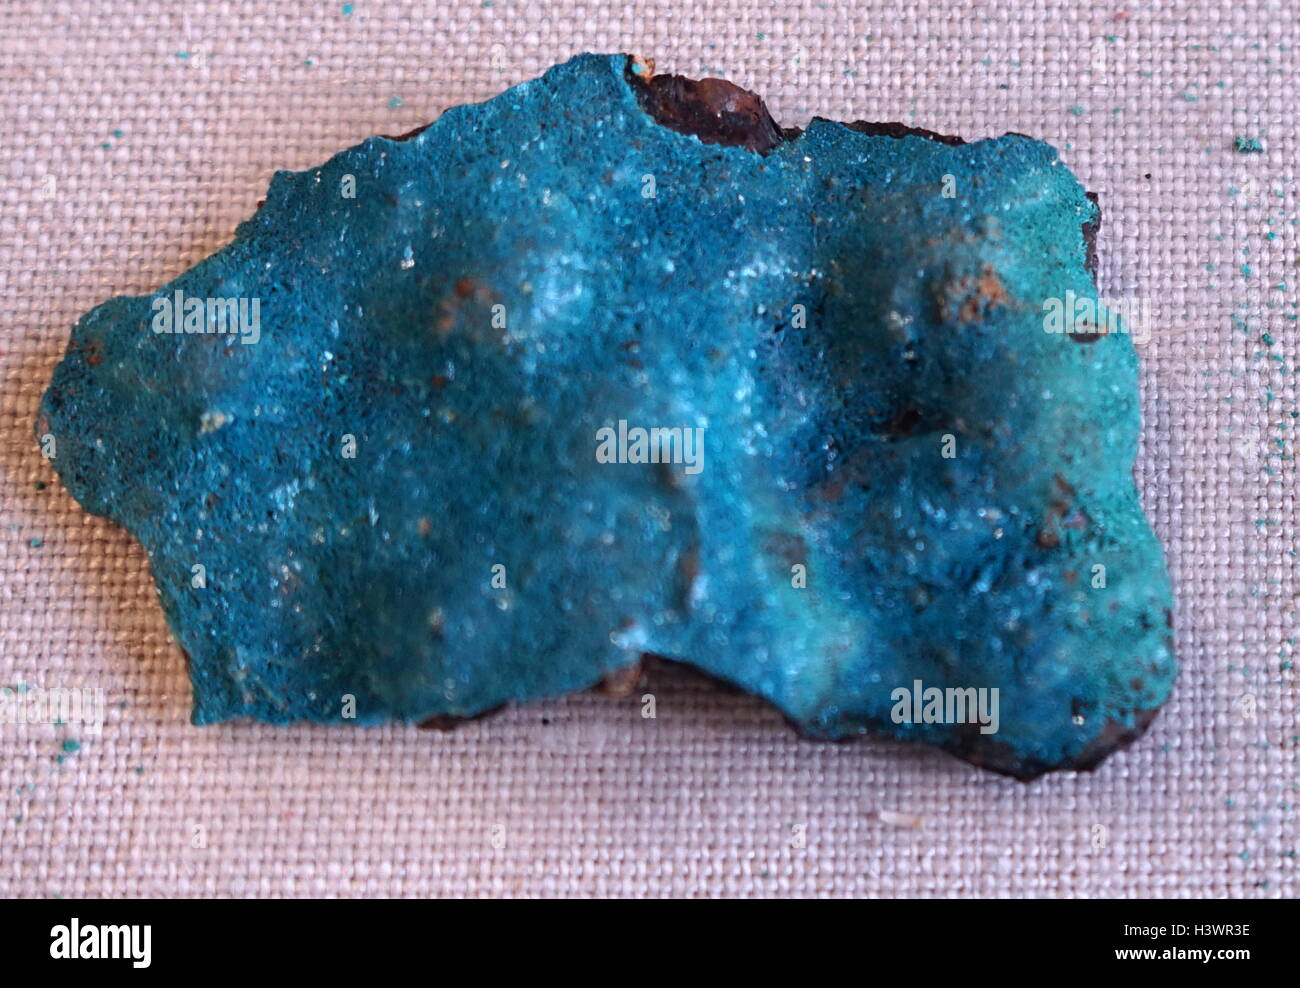 Eine Probe des Blauen kristalline Kruste auf Limonit, Eisenerz, bestehend aus einer Mischung aus hydratisiertem Eisen(III)-oxid-hydroxid. Vom 21. Jahrhundert Stockfoto